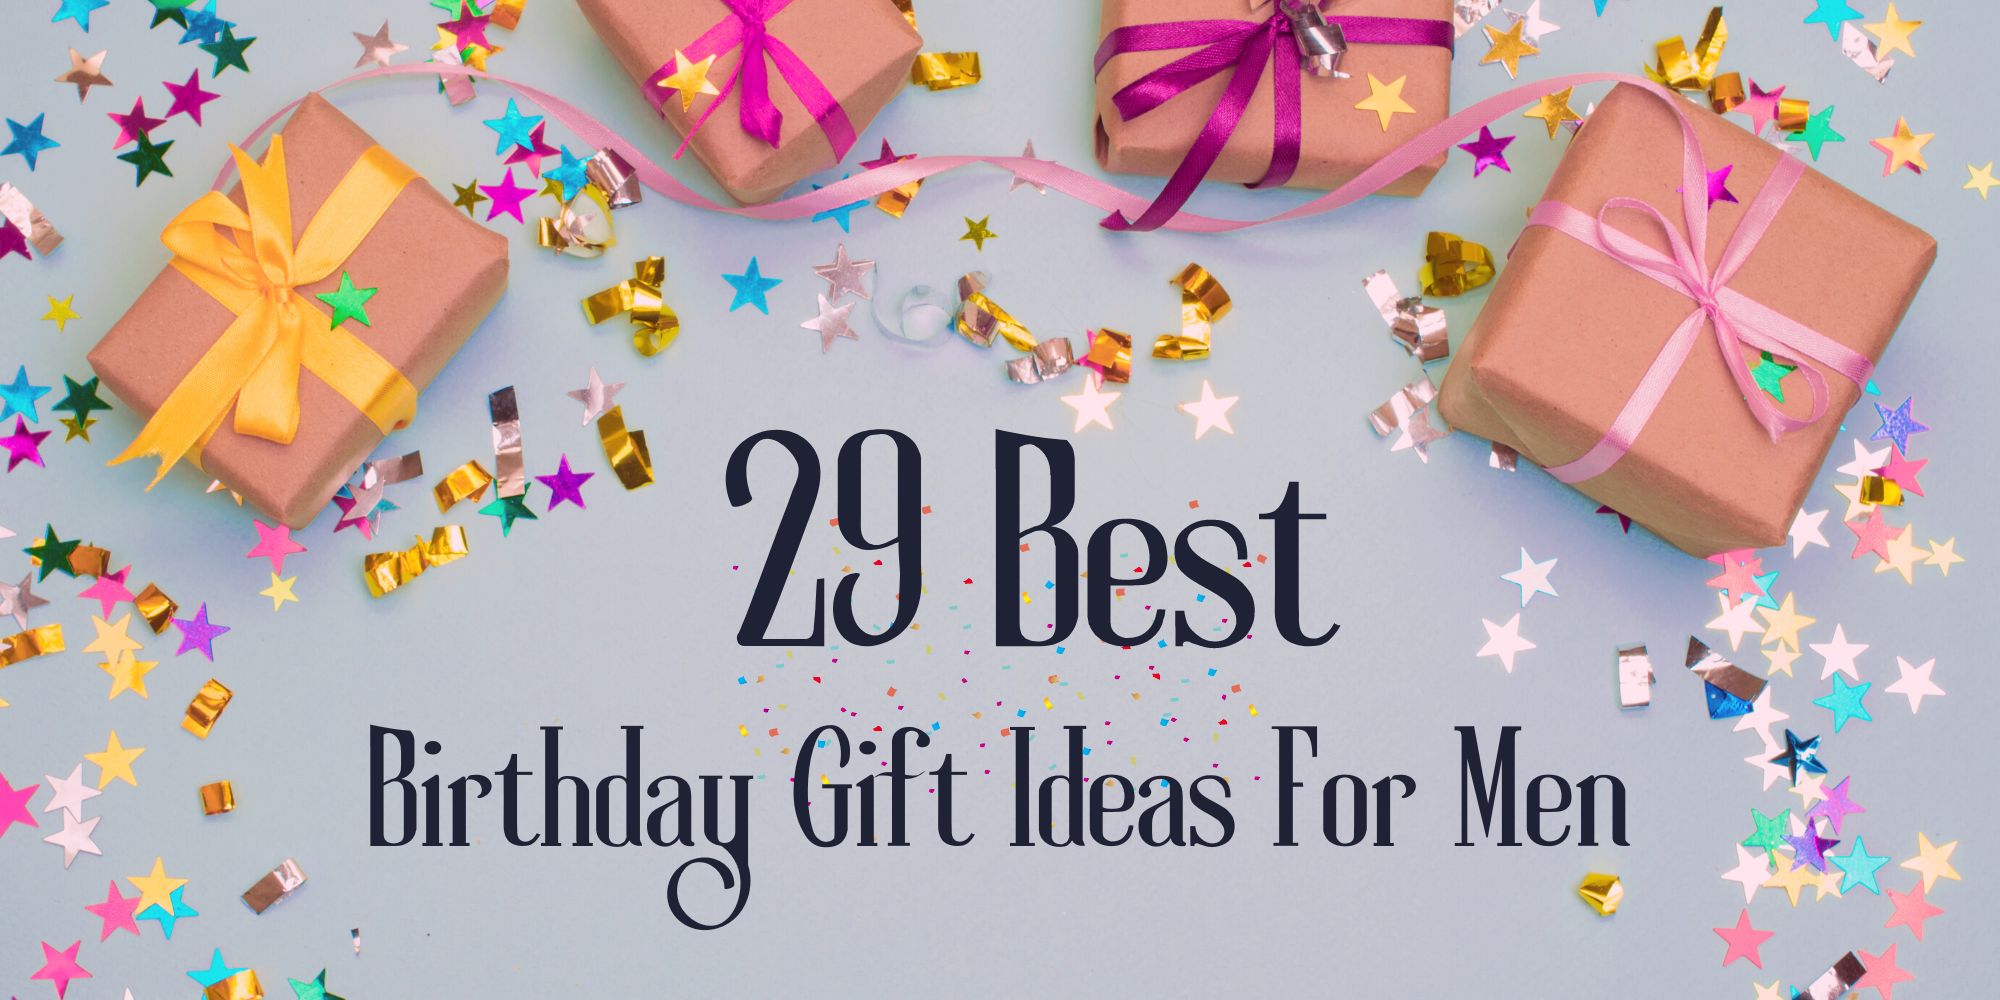 Best birthday gift ideas for men